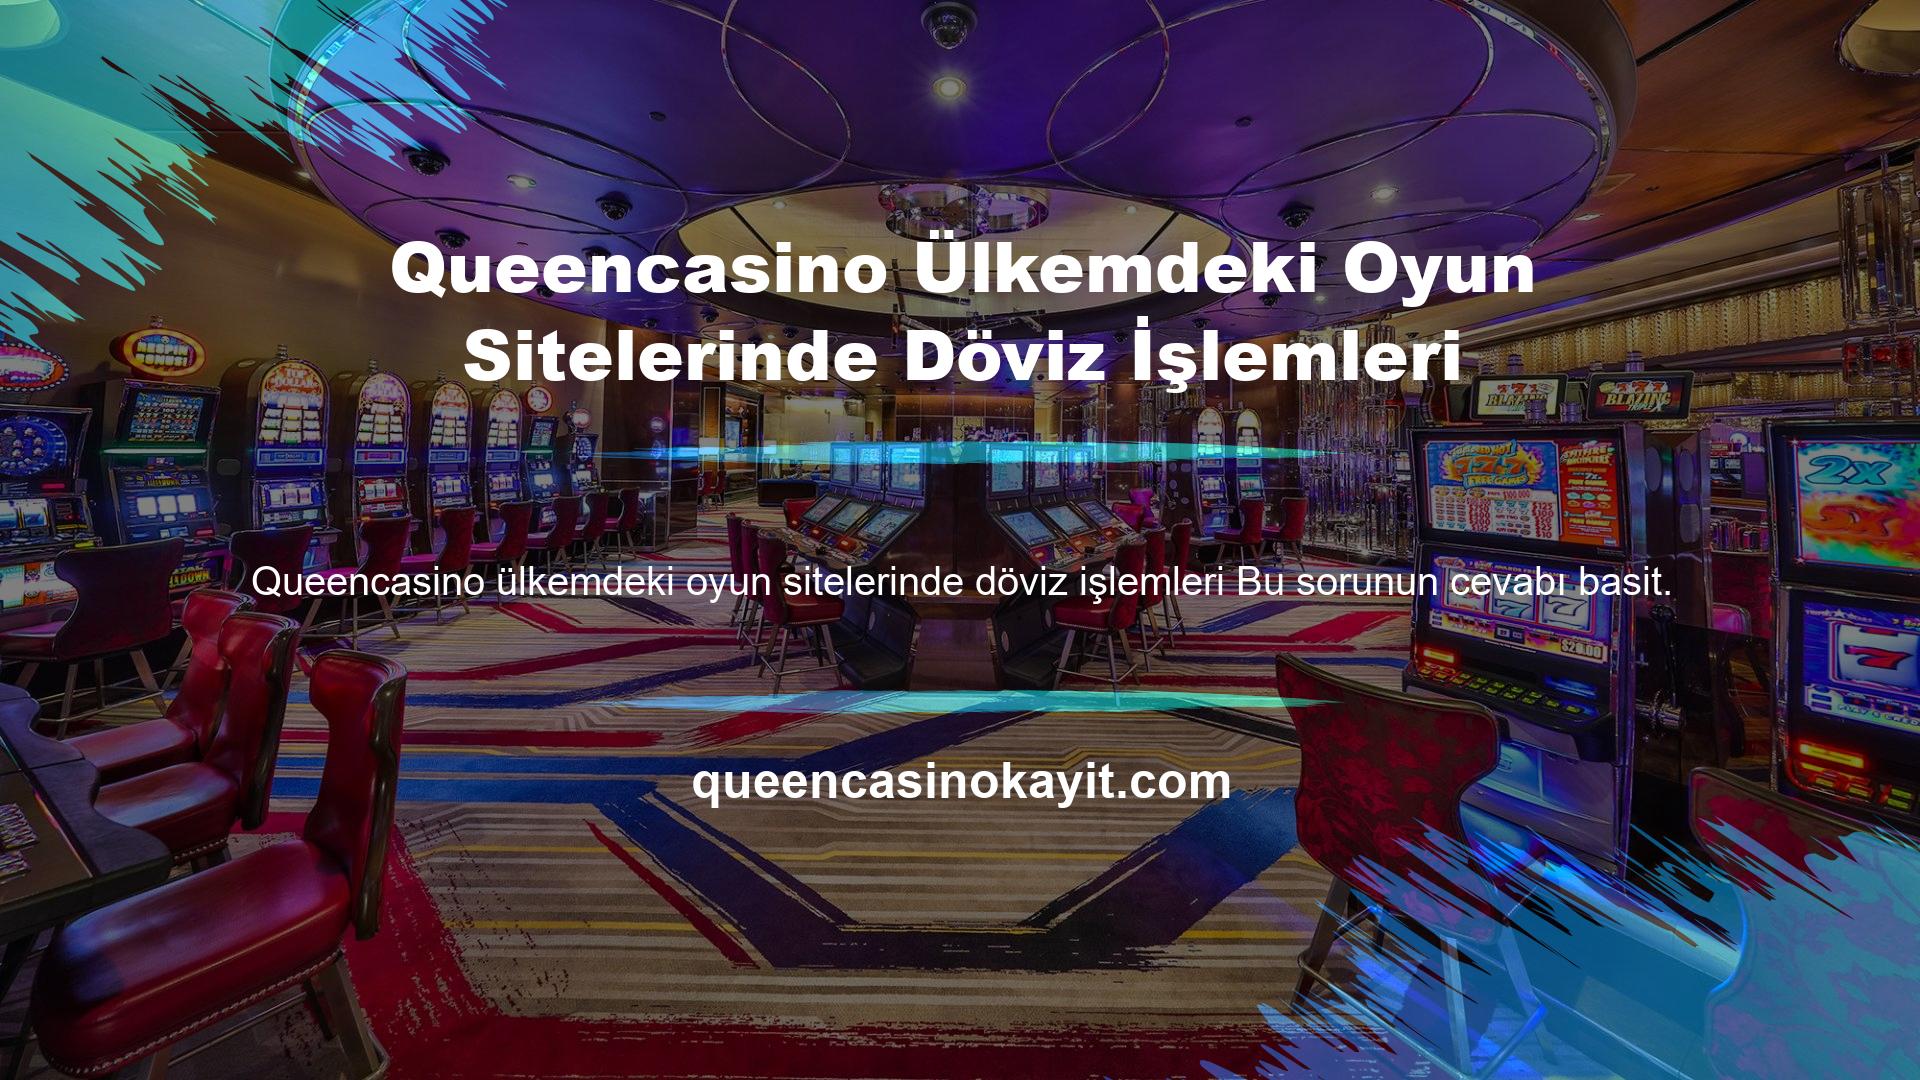 Queencasino Ülkemdeki Oyun Sitelerinde Döviz İşlemleri Türk bankaları sadece yasal kumar sitelerinden alacak vb